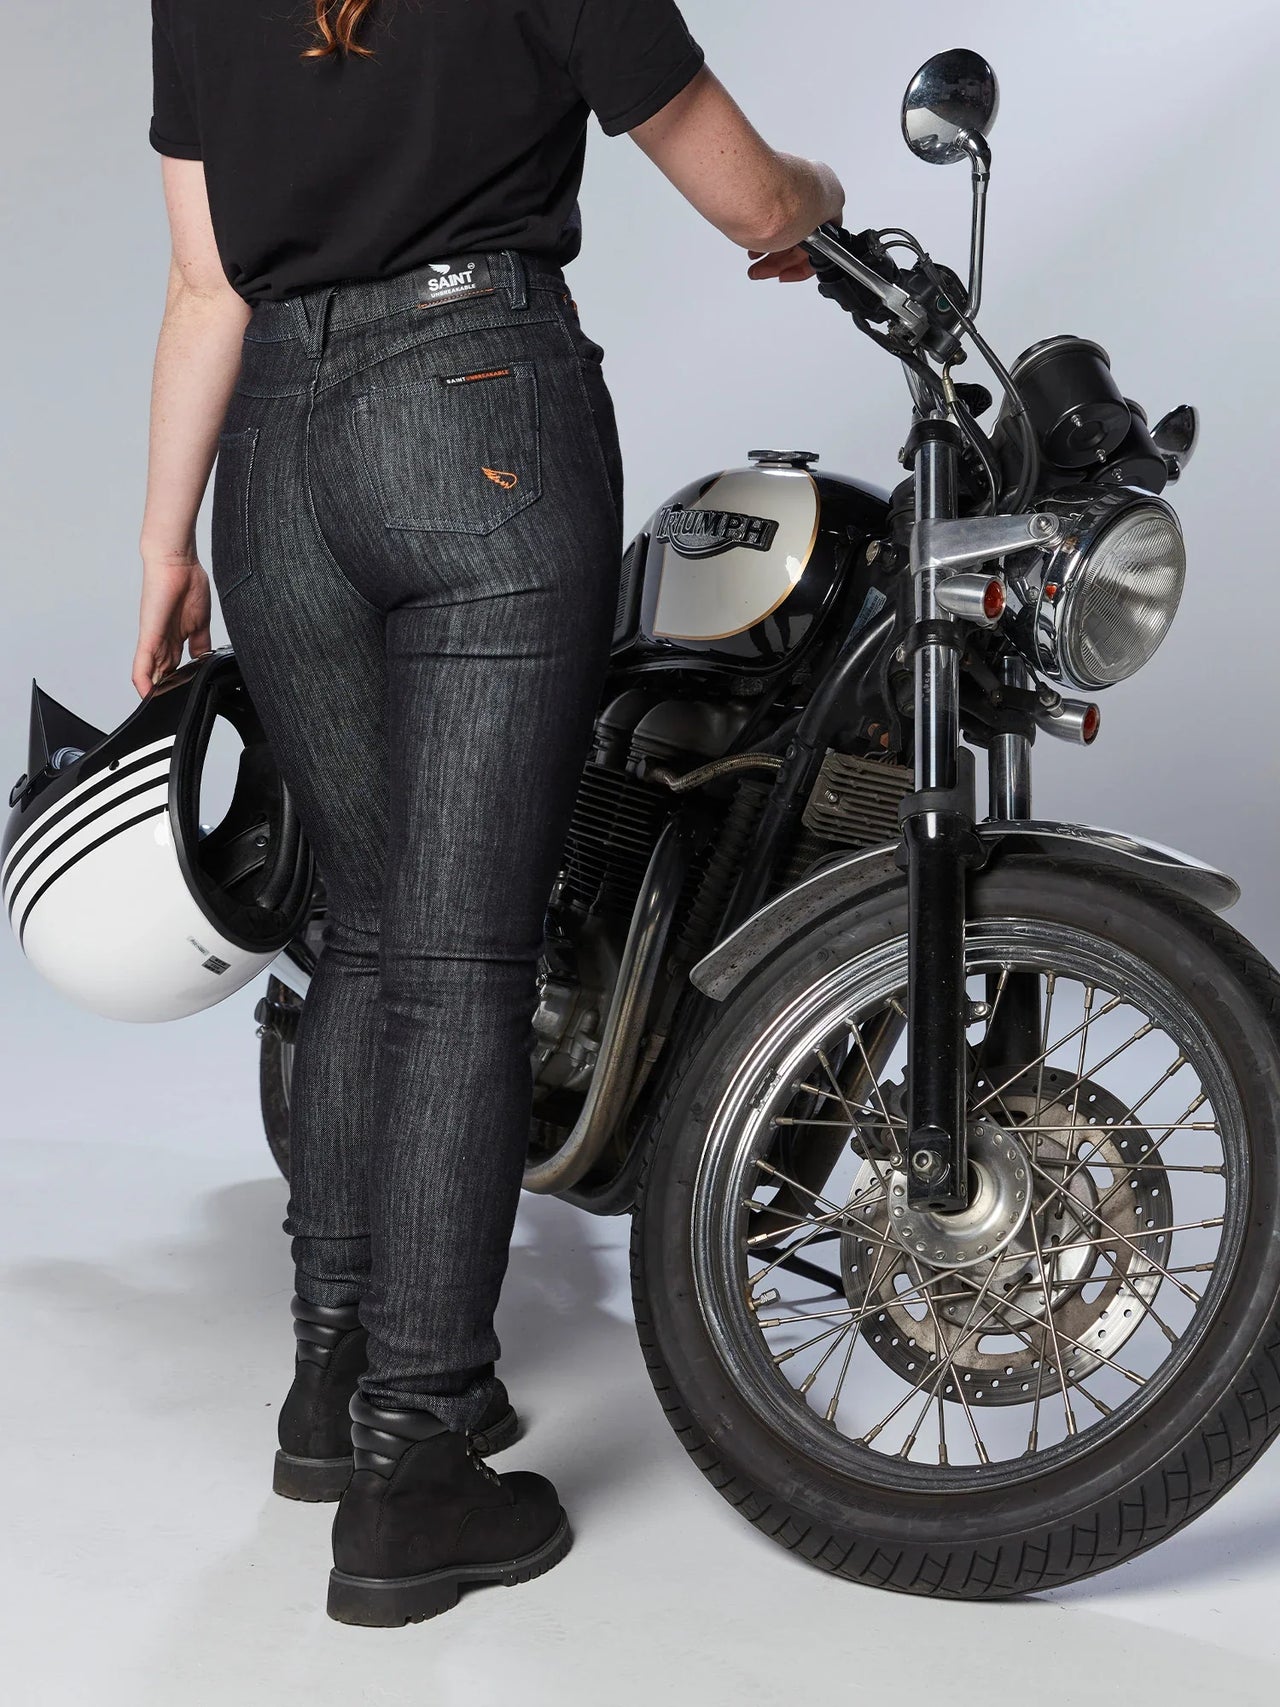 Venus Reinforced Motorcycle Jeans - Sand